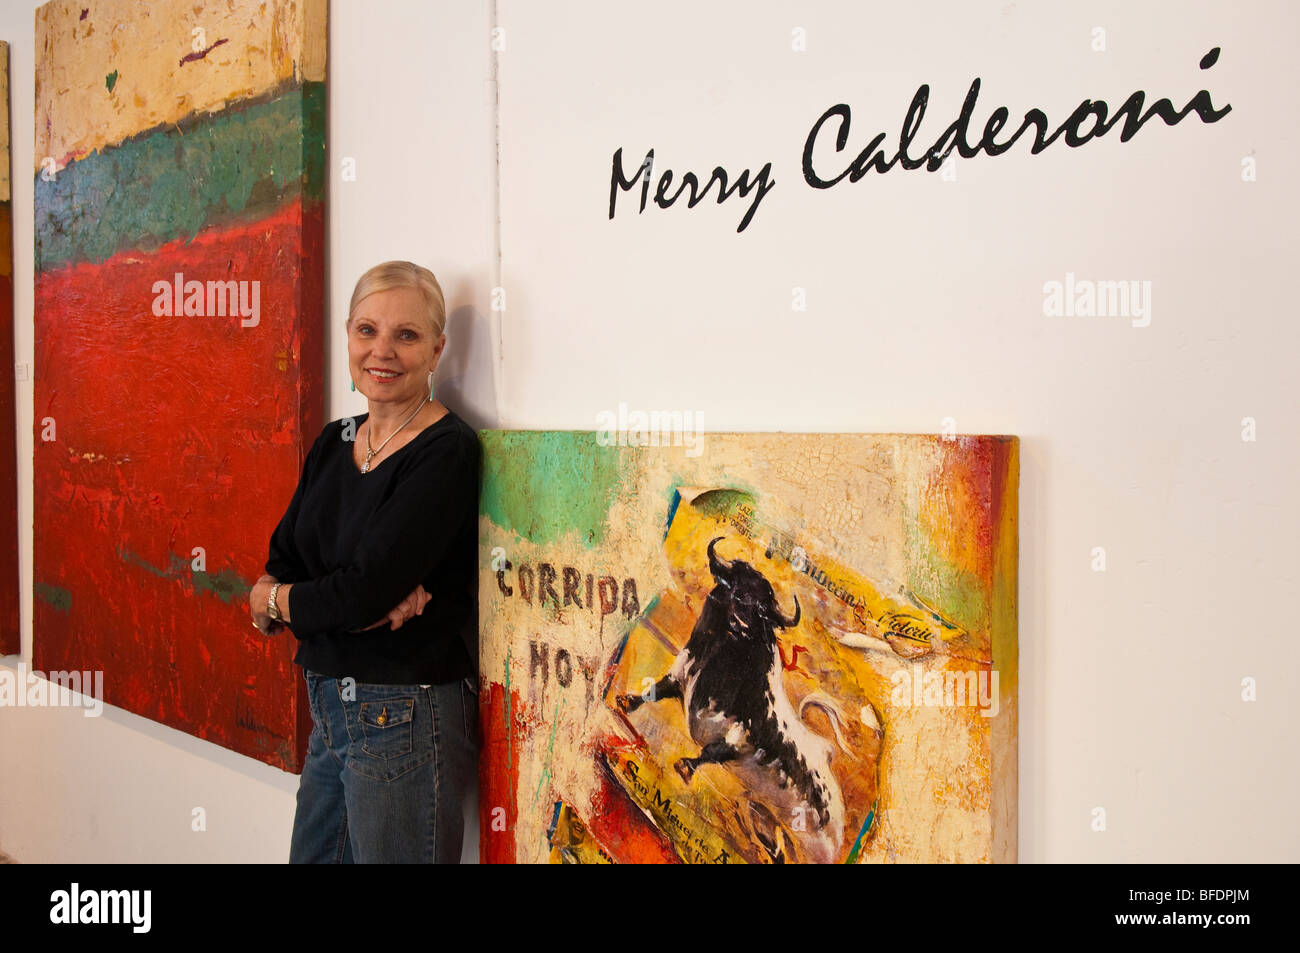 Artista Merry Calderoni nel suo studio presso La Aurora gallerie d'arte, San Miguel De Allende, Guanajuato, Messico. Foto Stock